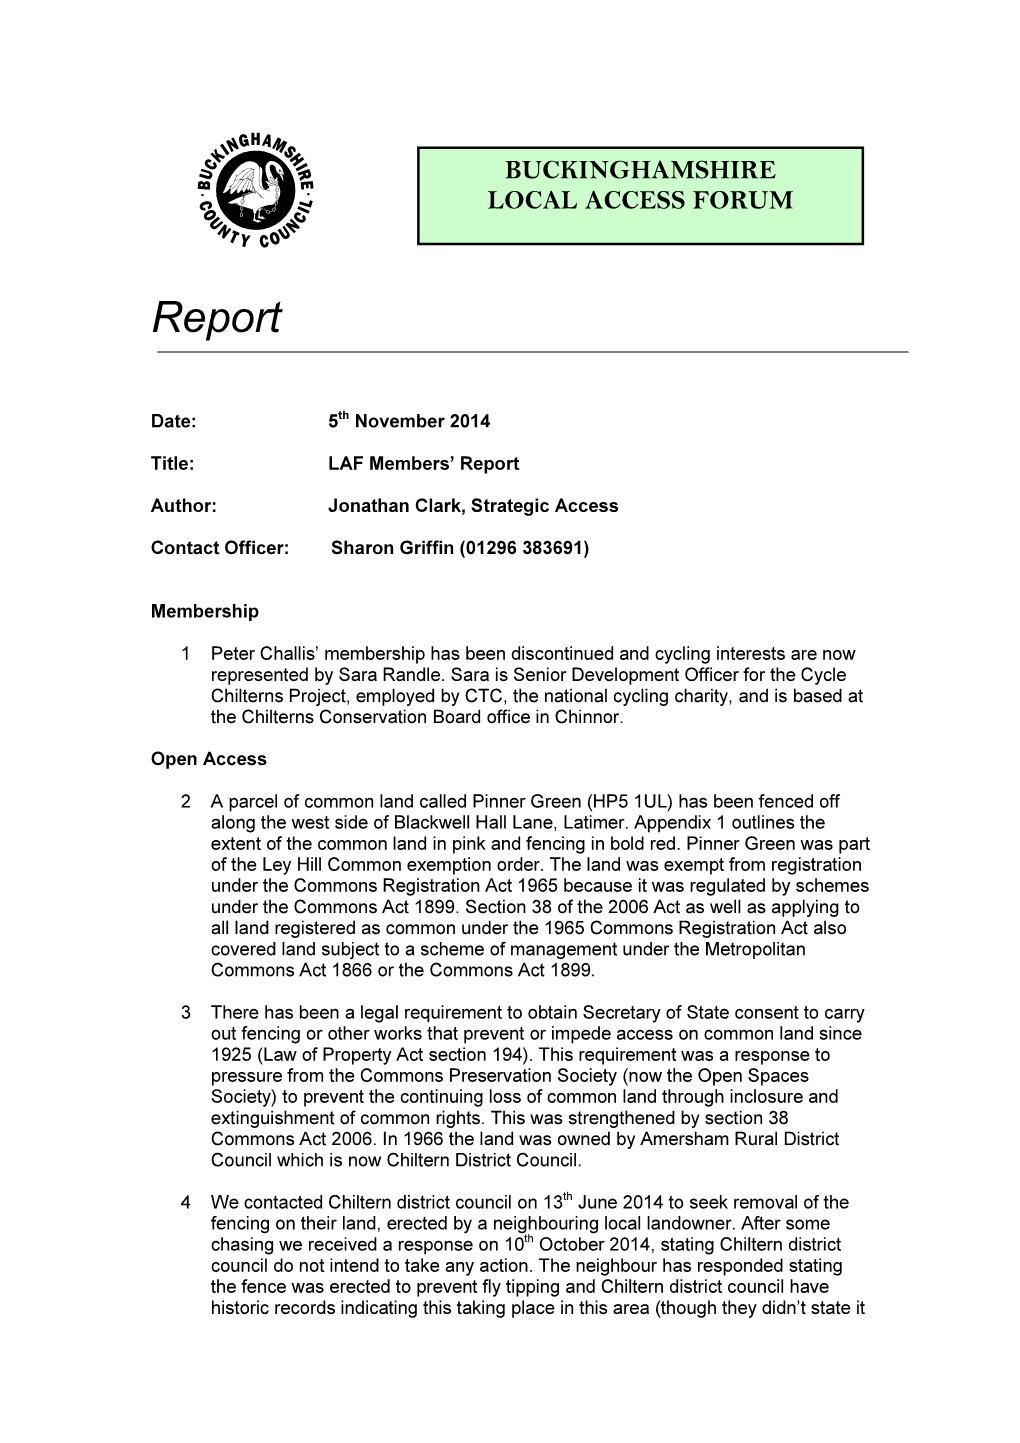 LAF Members Report PDF 54 KB